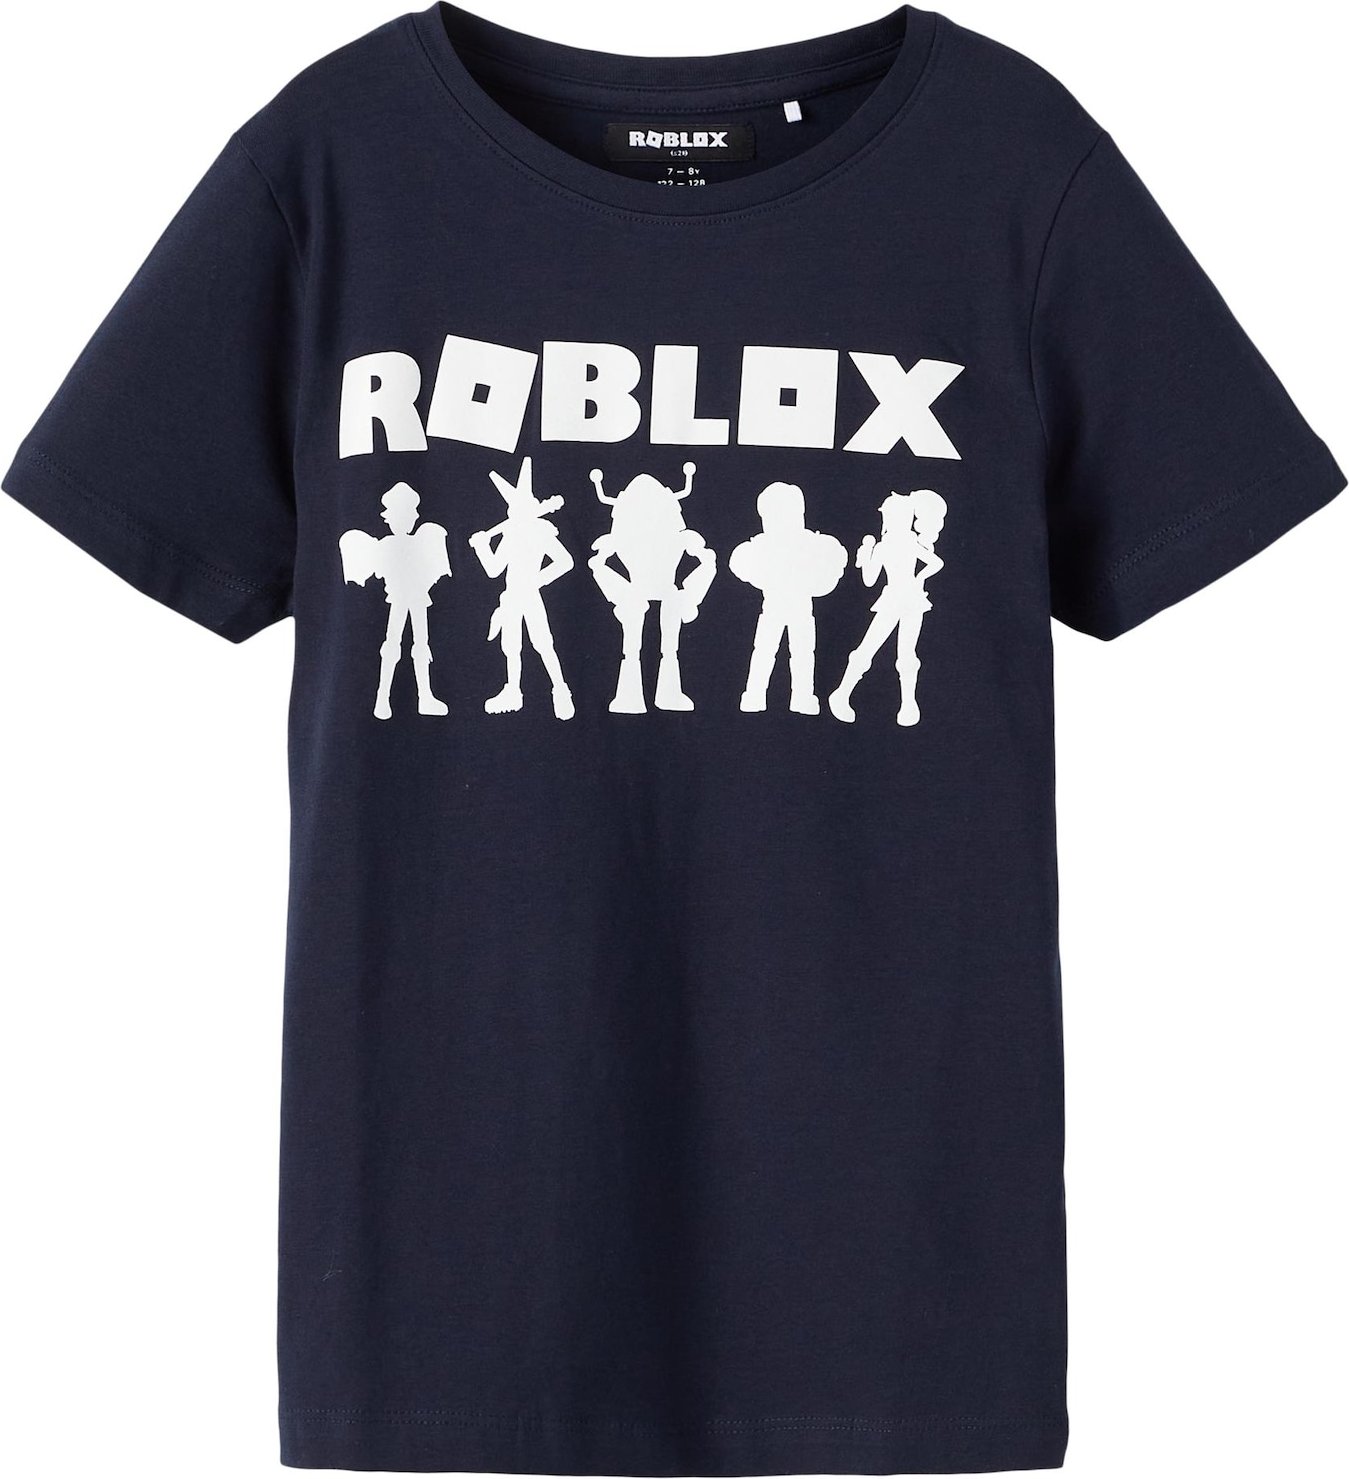 NAME IT Tričko 'Roblox' námořnická modř / bílá